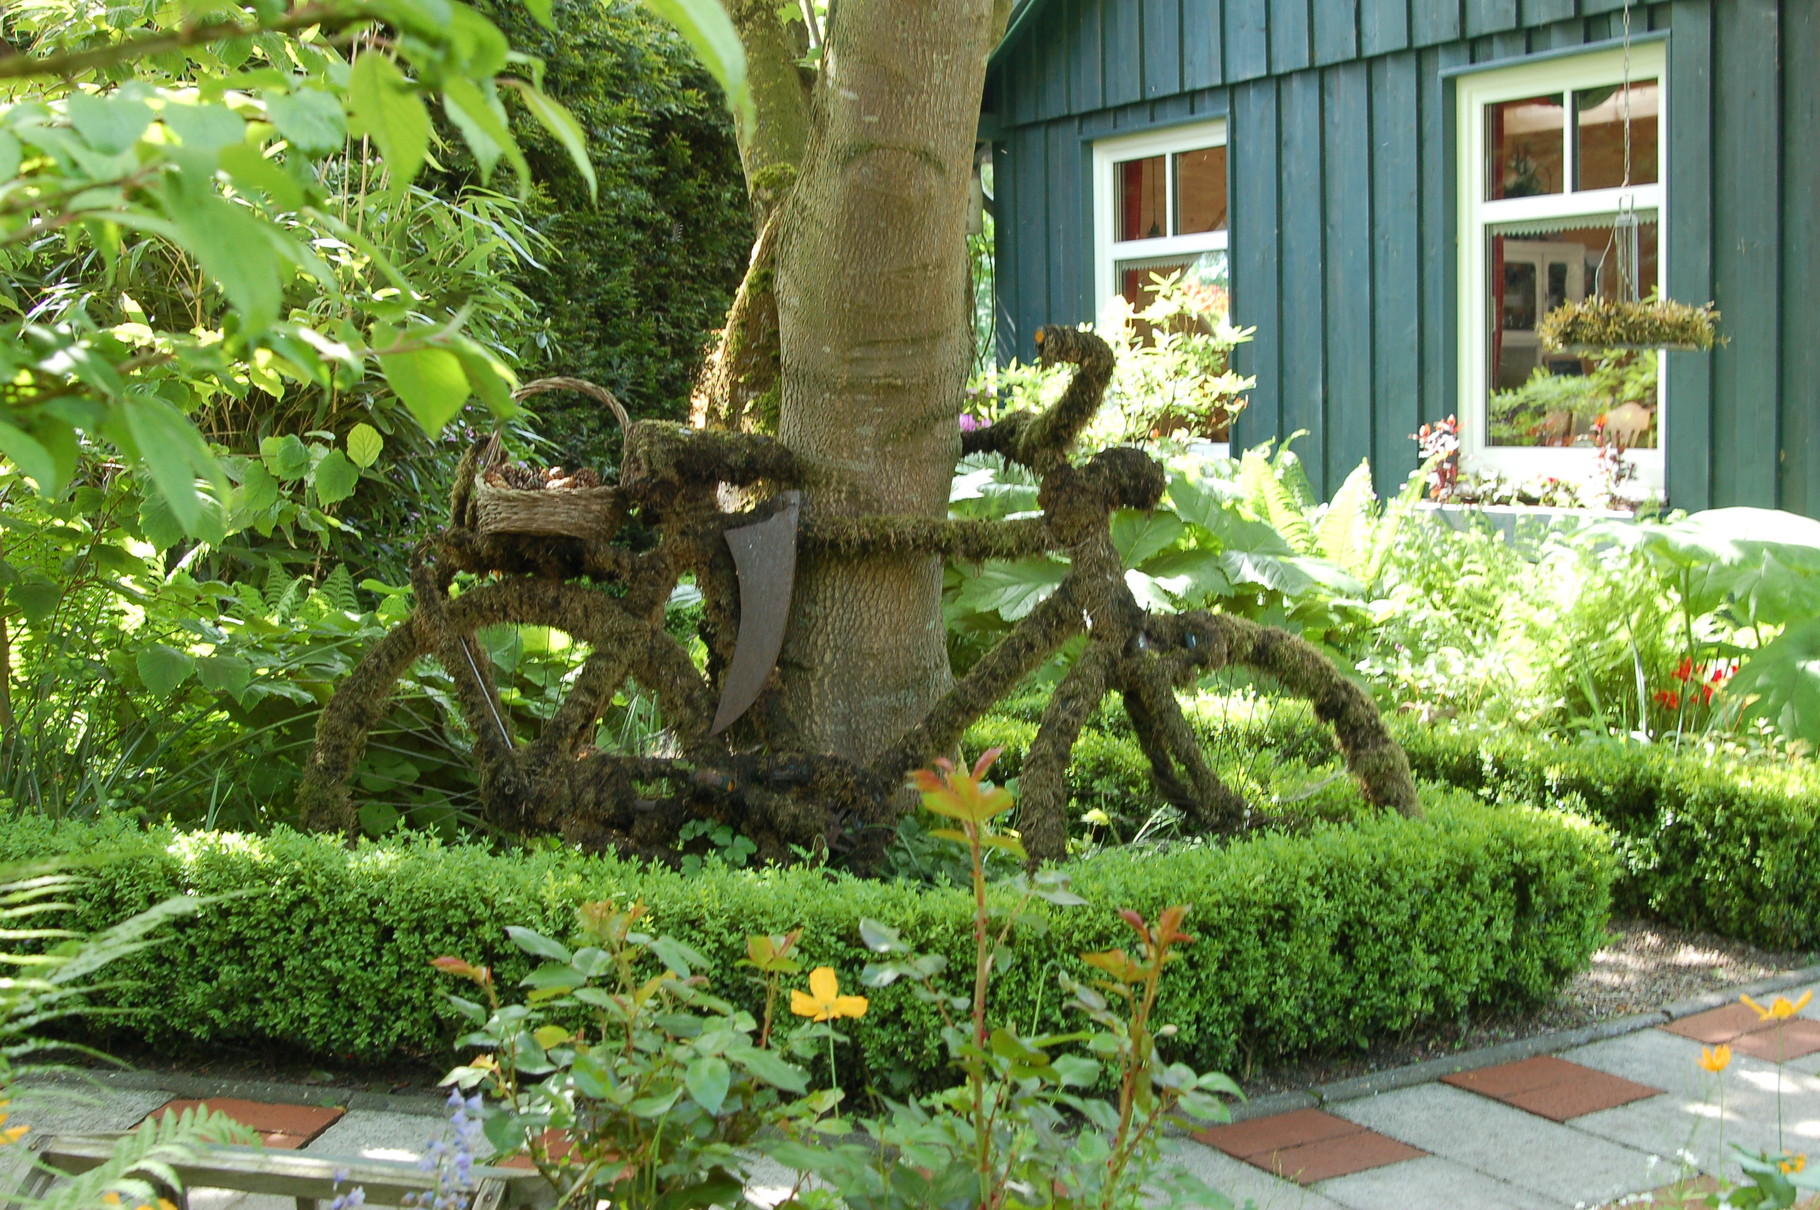 Ein Fahrrad umwickelt mit Moos, ein seltener Anblick für einen Gartenfreund. Ziert jeden Zugang zum Garten und vermittelt dem Besucher den Eindruck eines abwechslungsreichen Rundganges durch ihre Gartenanlage.